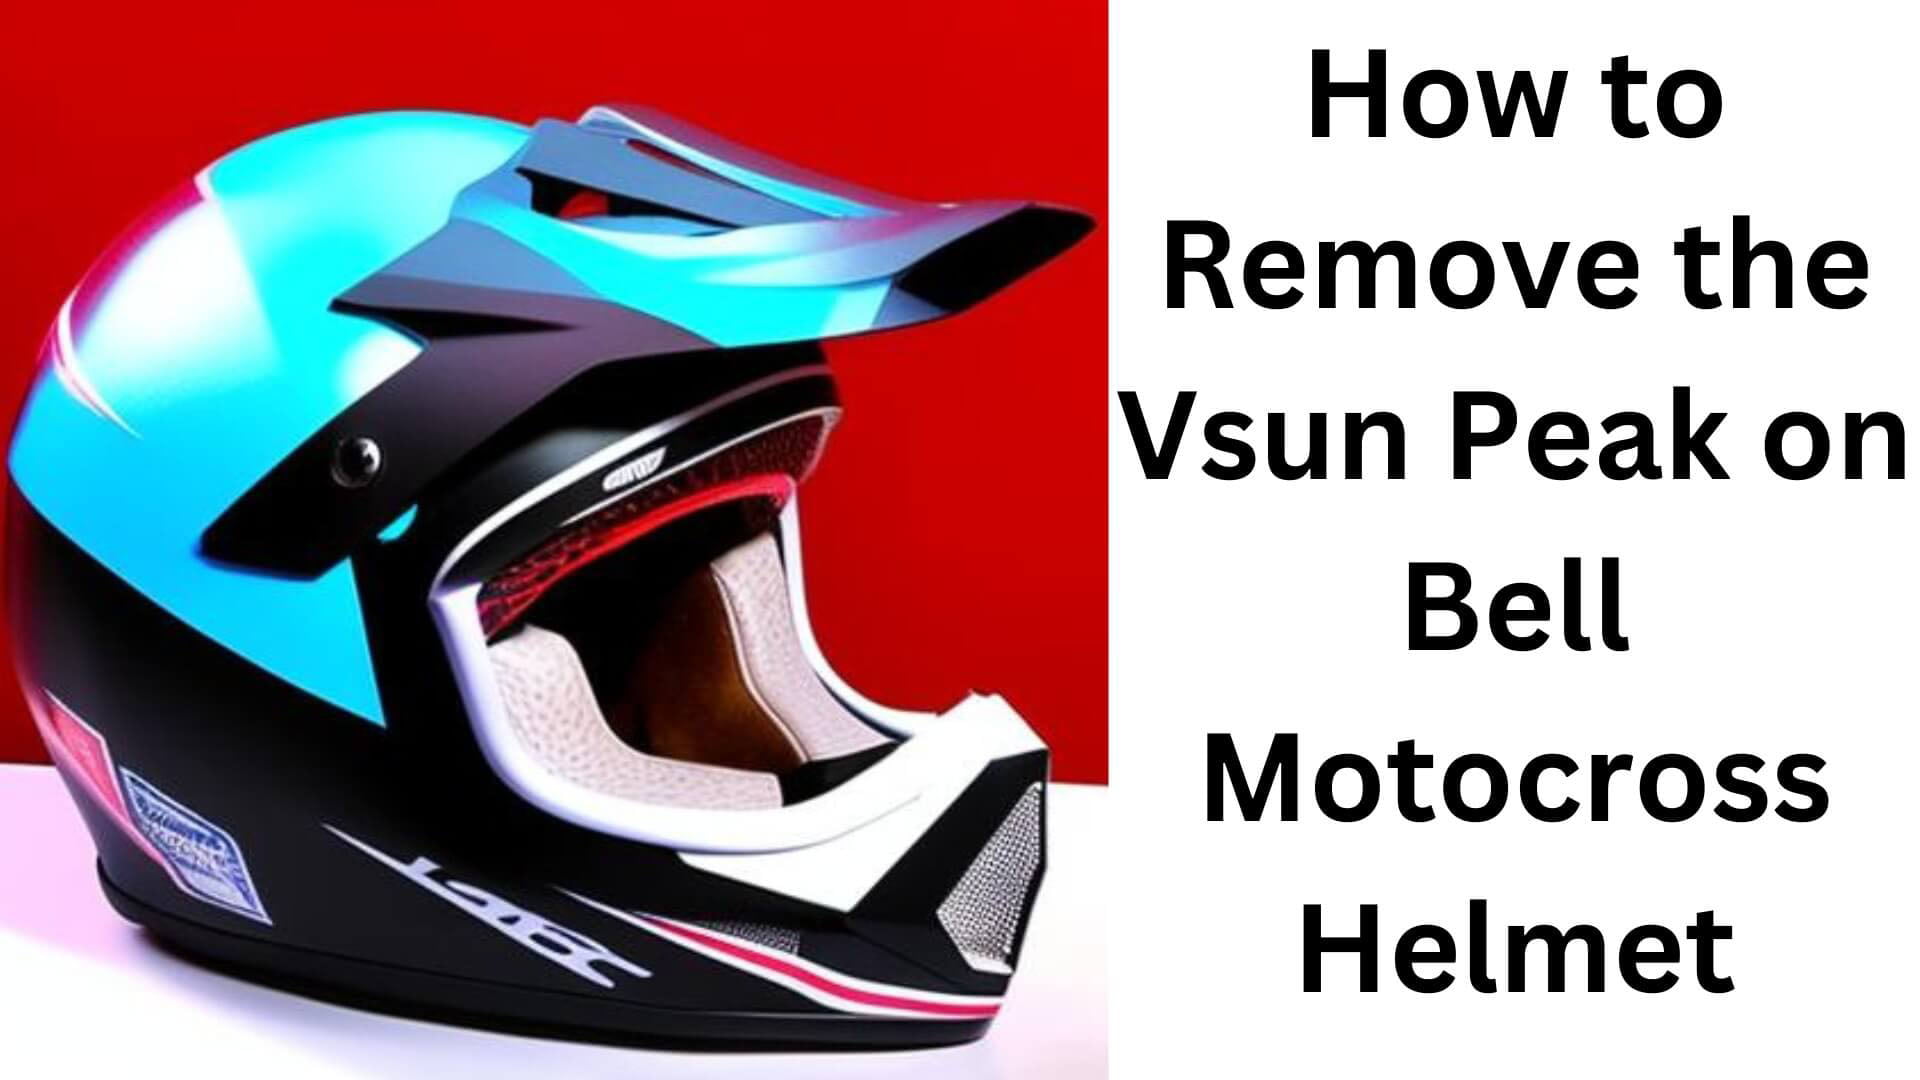 how to remove the vsun peak on bell motocross helmet